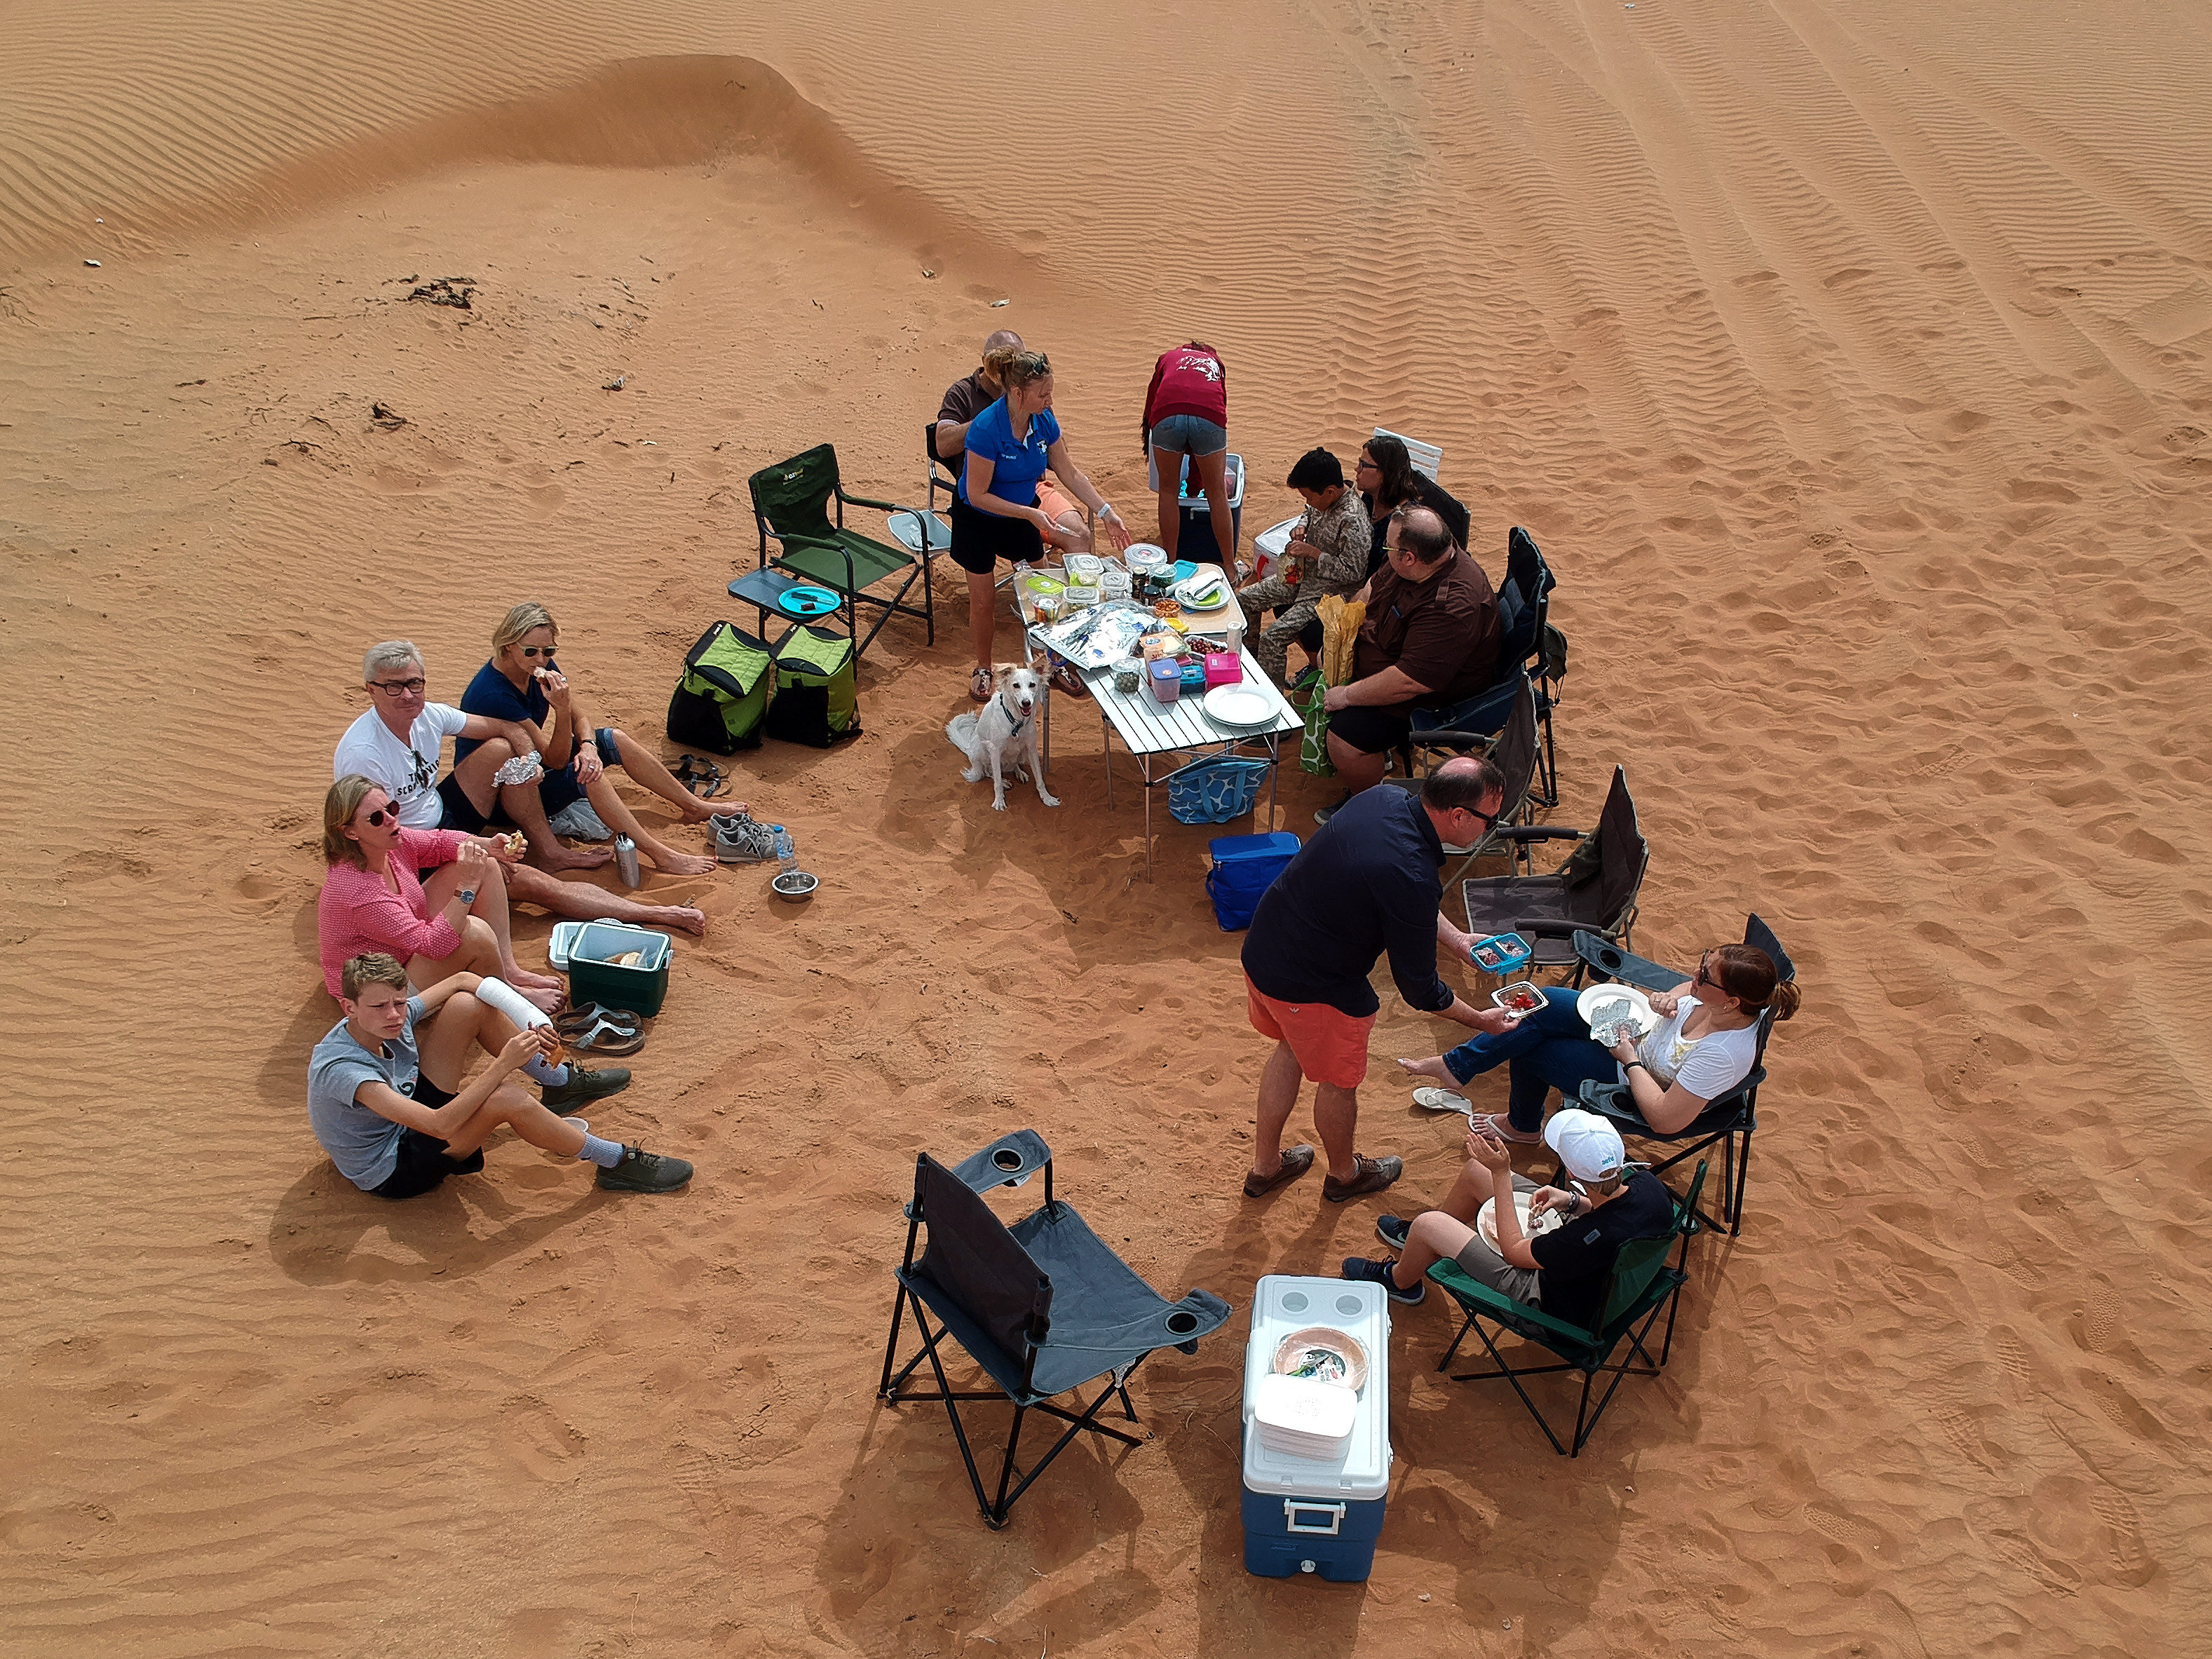 Picknick in de woestijn